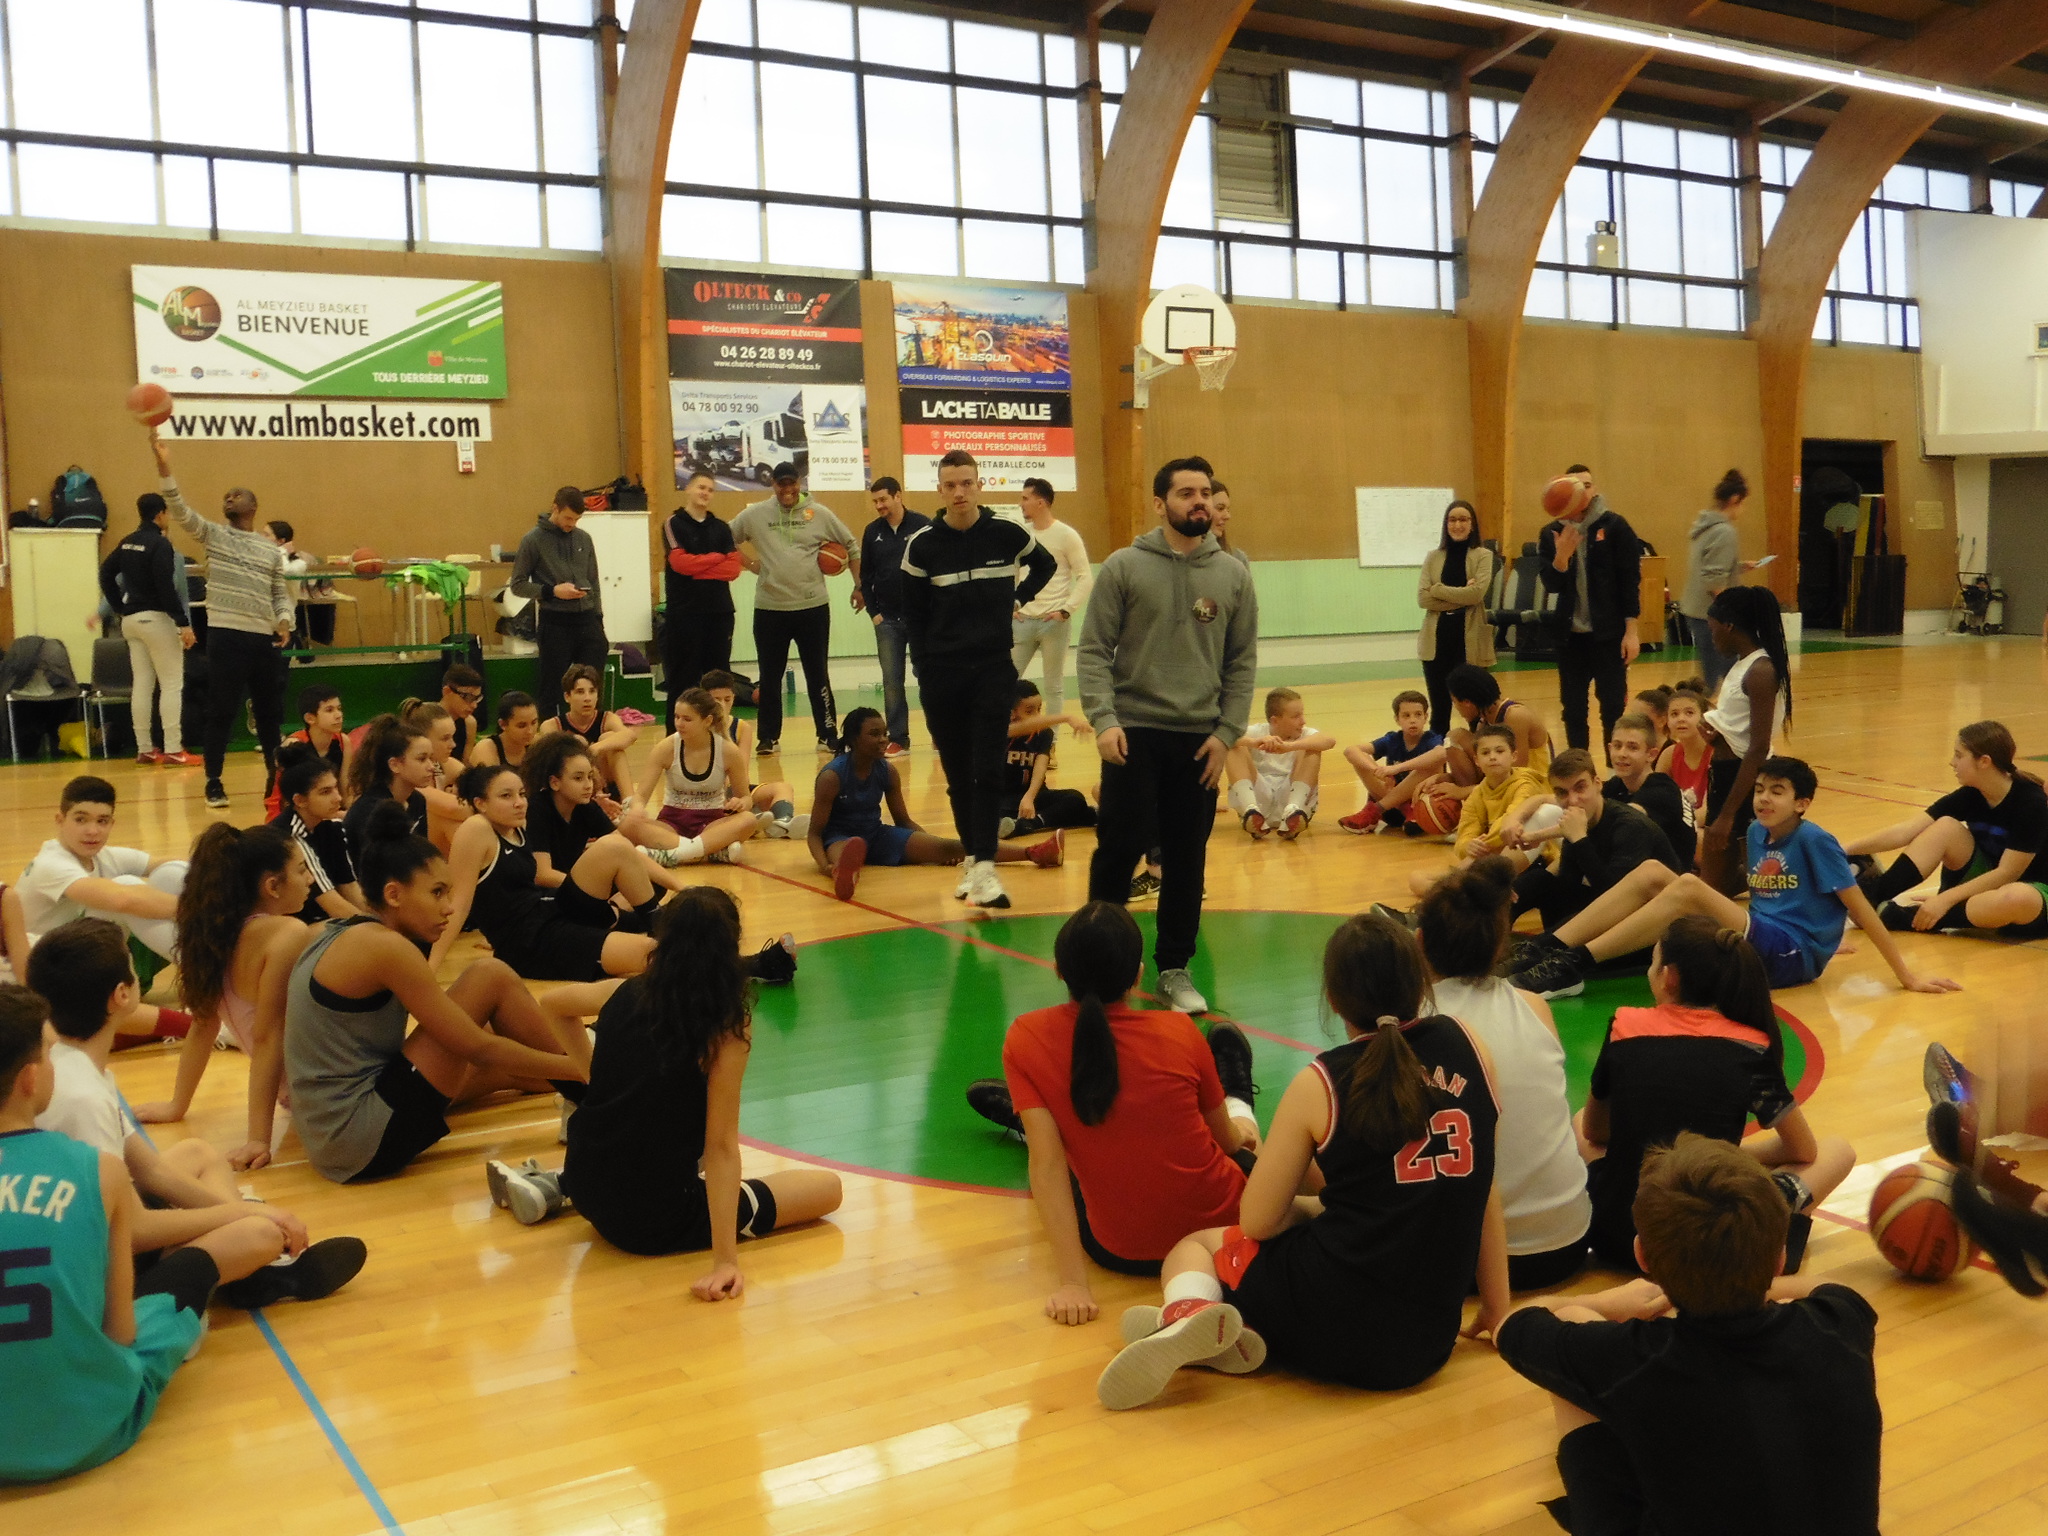 MEYZIEU | Belle réussite de la première journée club de l’AL Meyzieu Basket